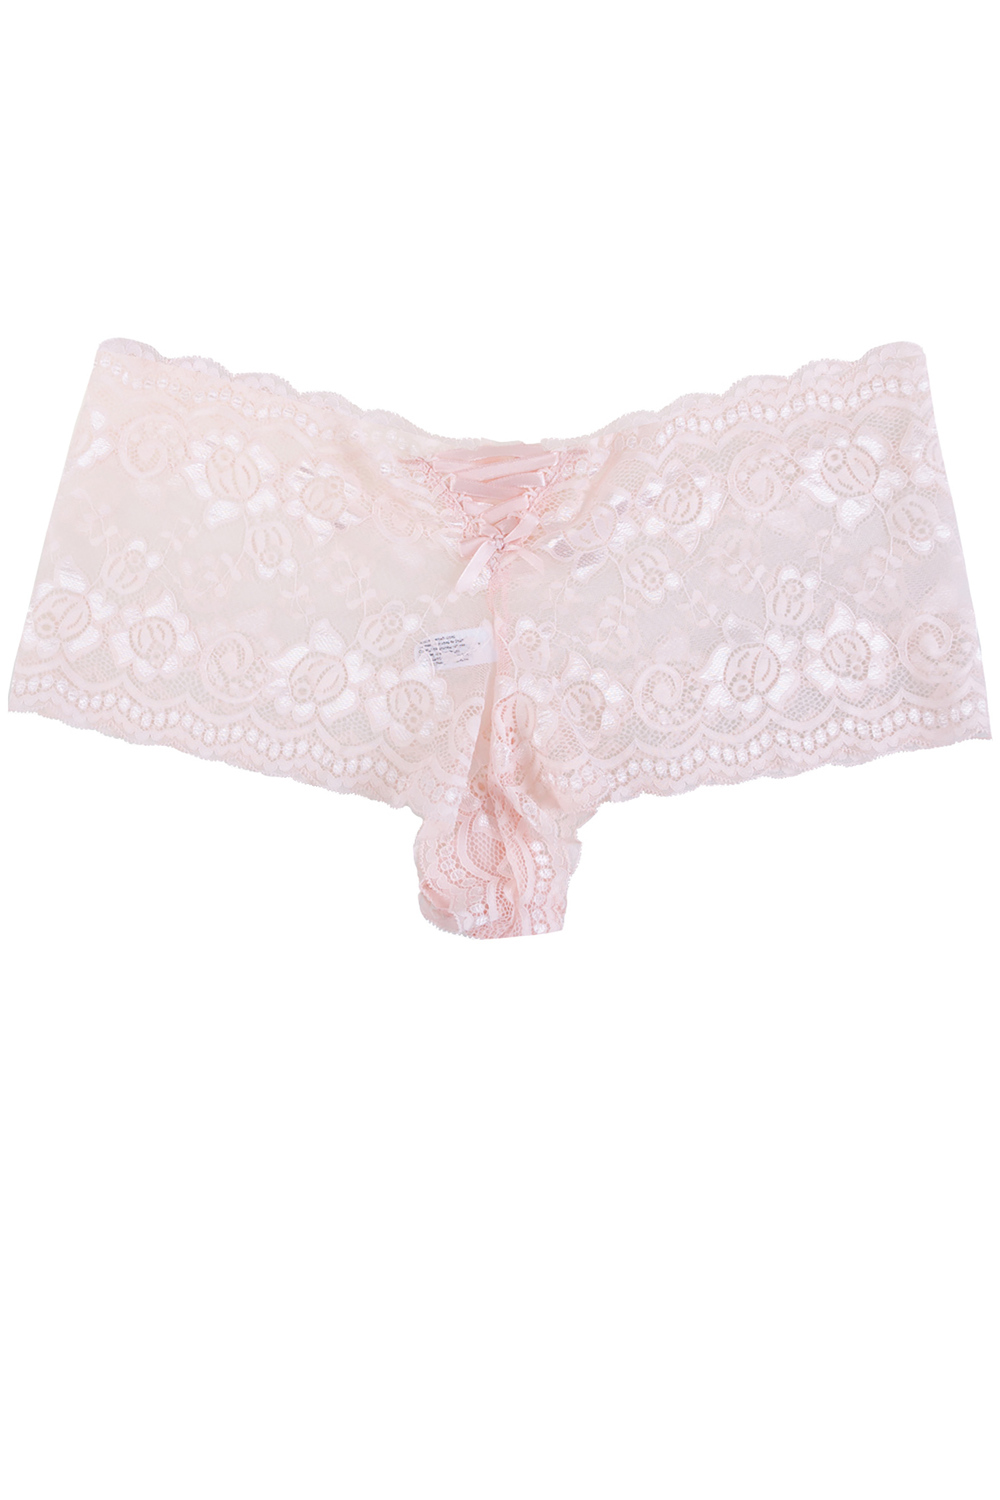 Plunging lace push-up demi bra set, blush - Plus Size. Colour: light pink.  Size: 40c/8